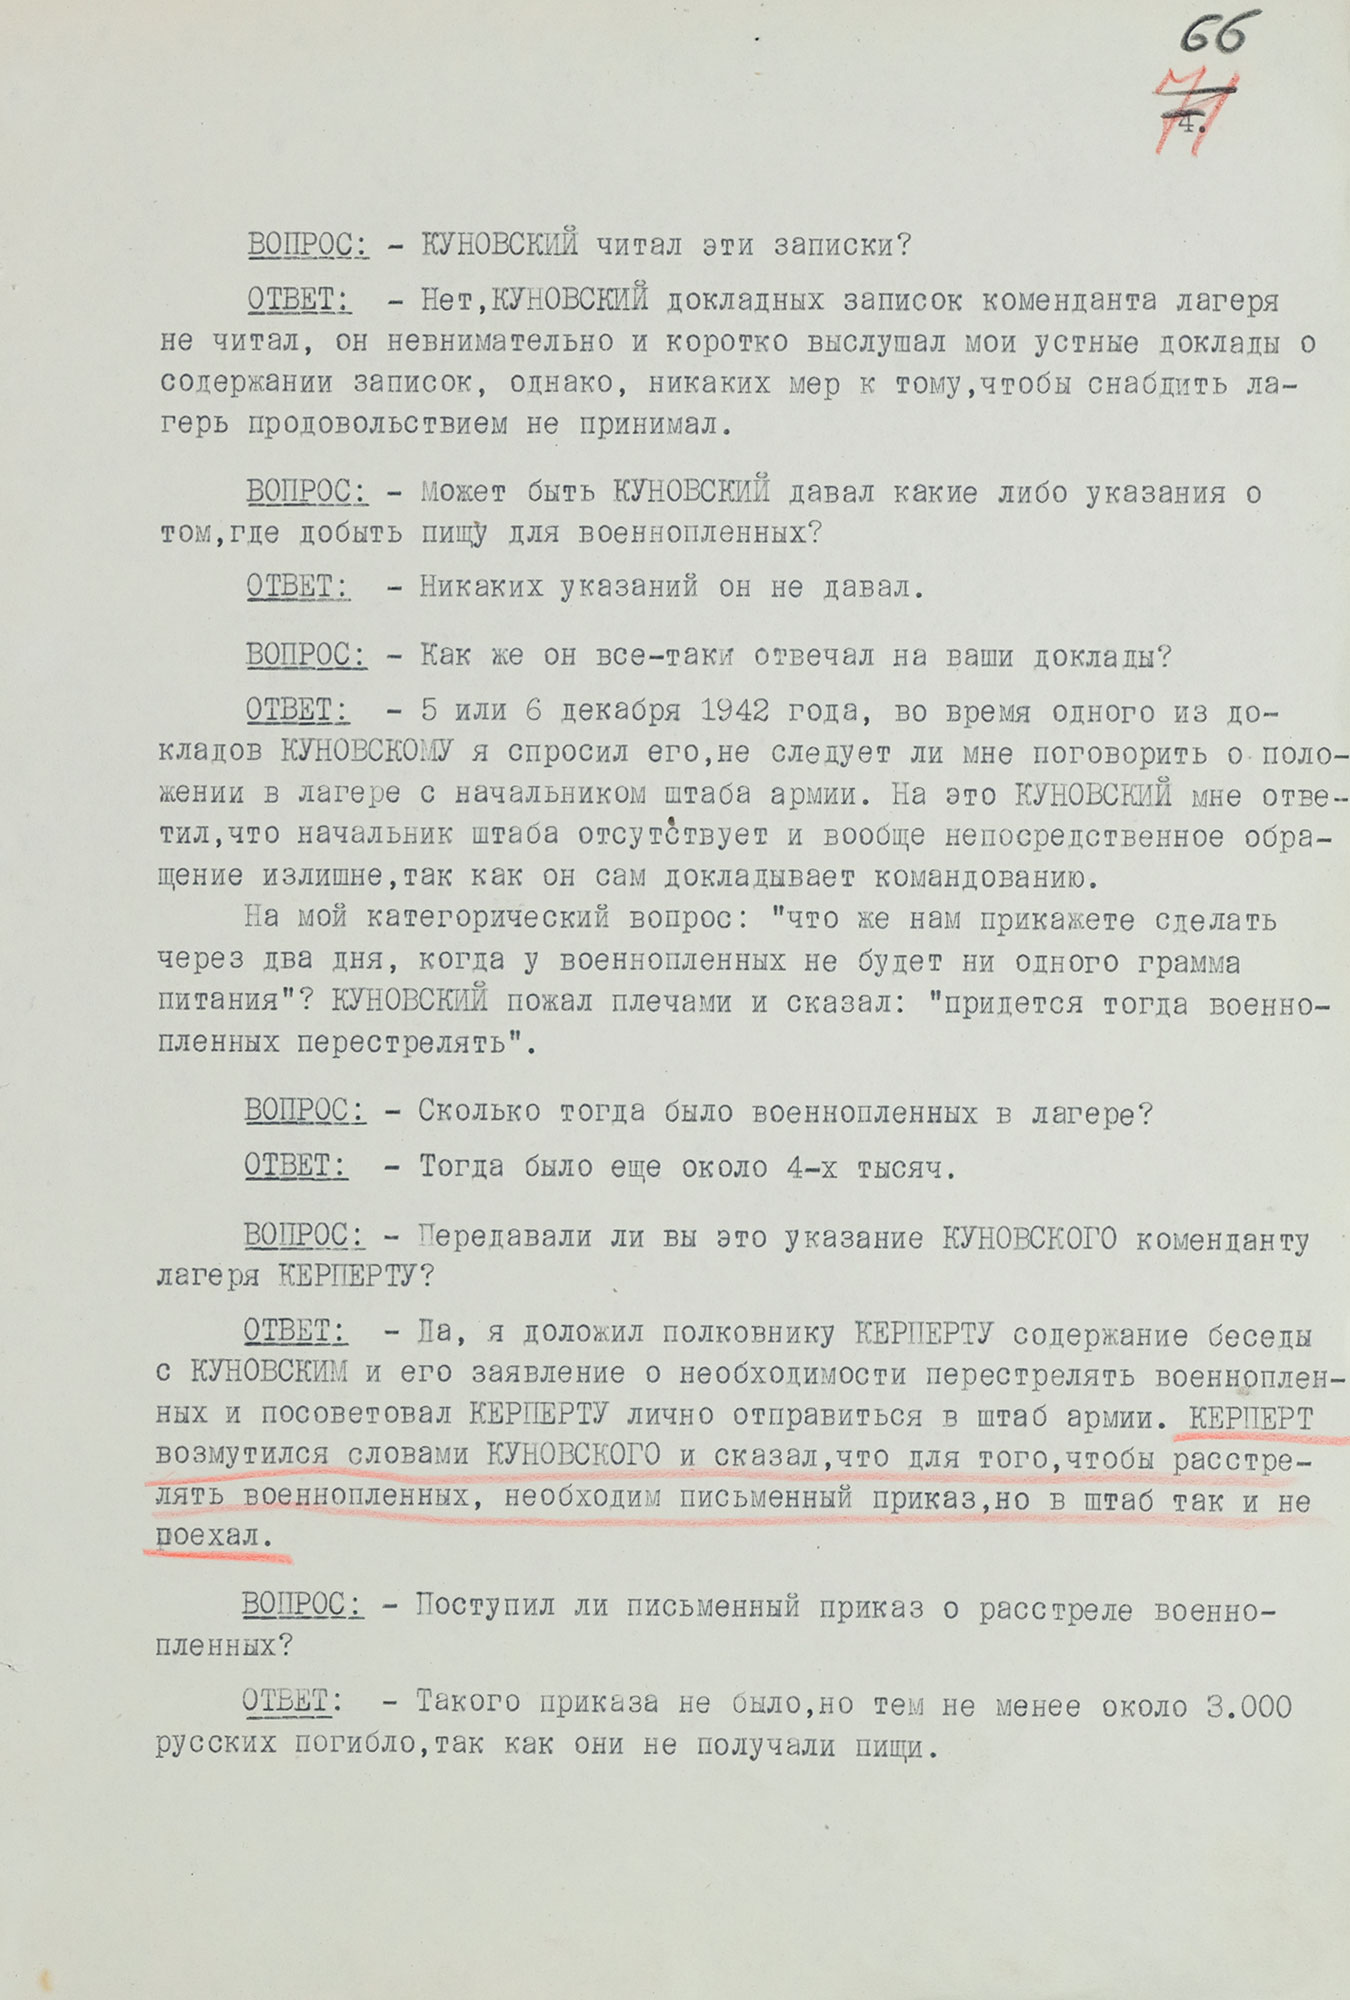 Протокол допроса военнопленного обер-лейтенанта германской армии МЕДЕРА Отто, адъютанта коменданта «Дулаг-205». 27 августа 1943 г. Страница 4